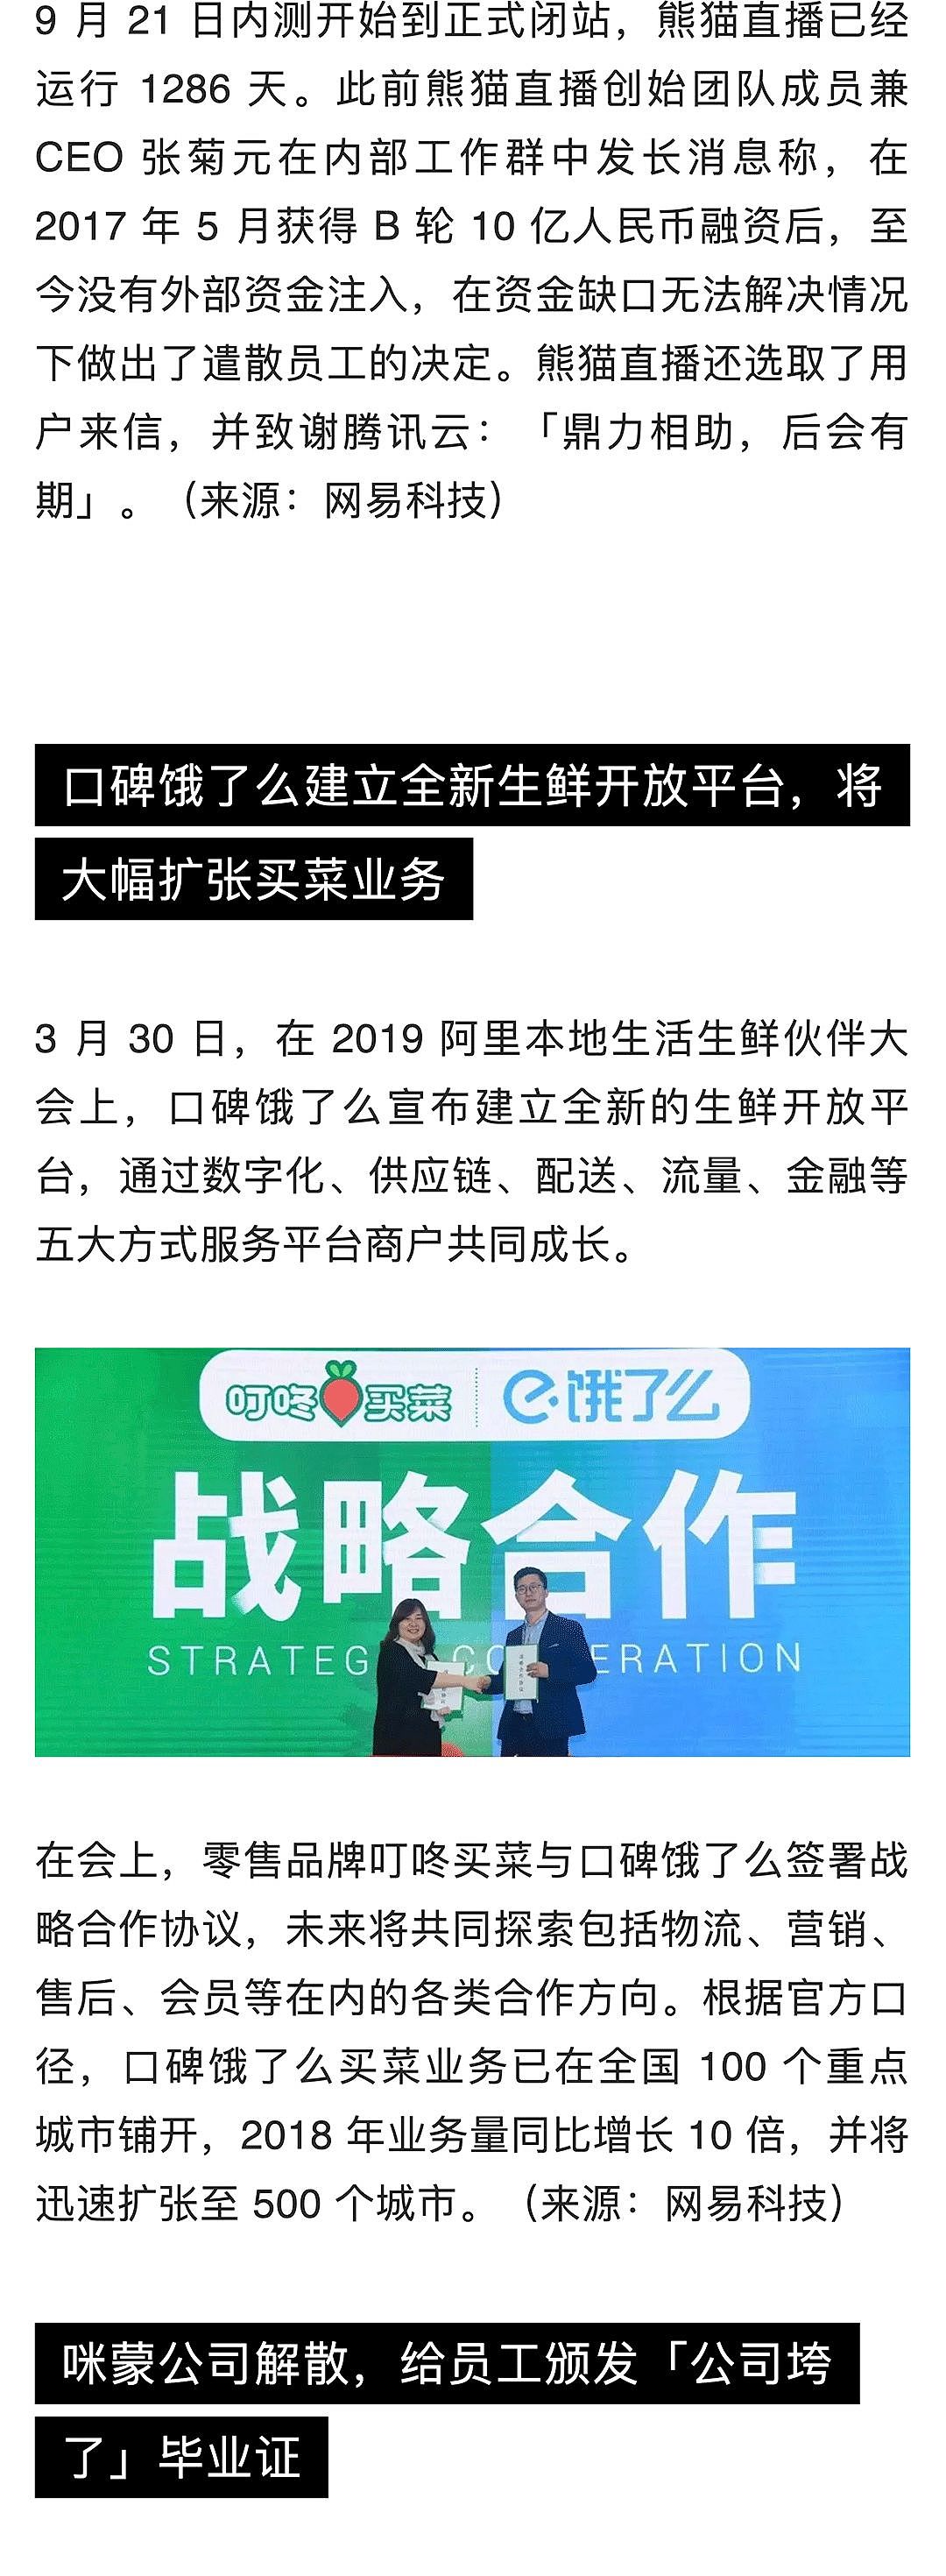 苹果中国全线降价约 3%；熊猫直播宣布正式关闭；苹果挖角特斯拉工程副总裁 | 极客早知道 - 4